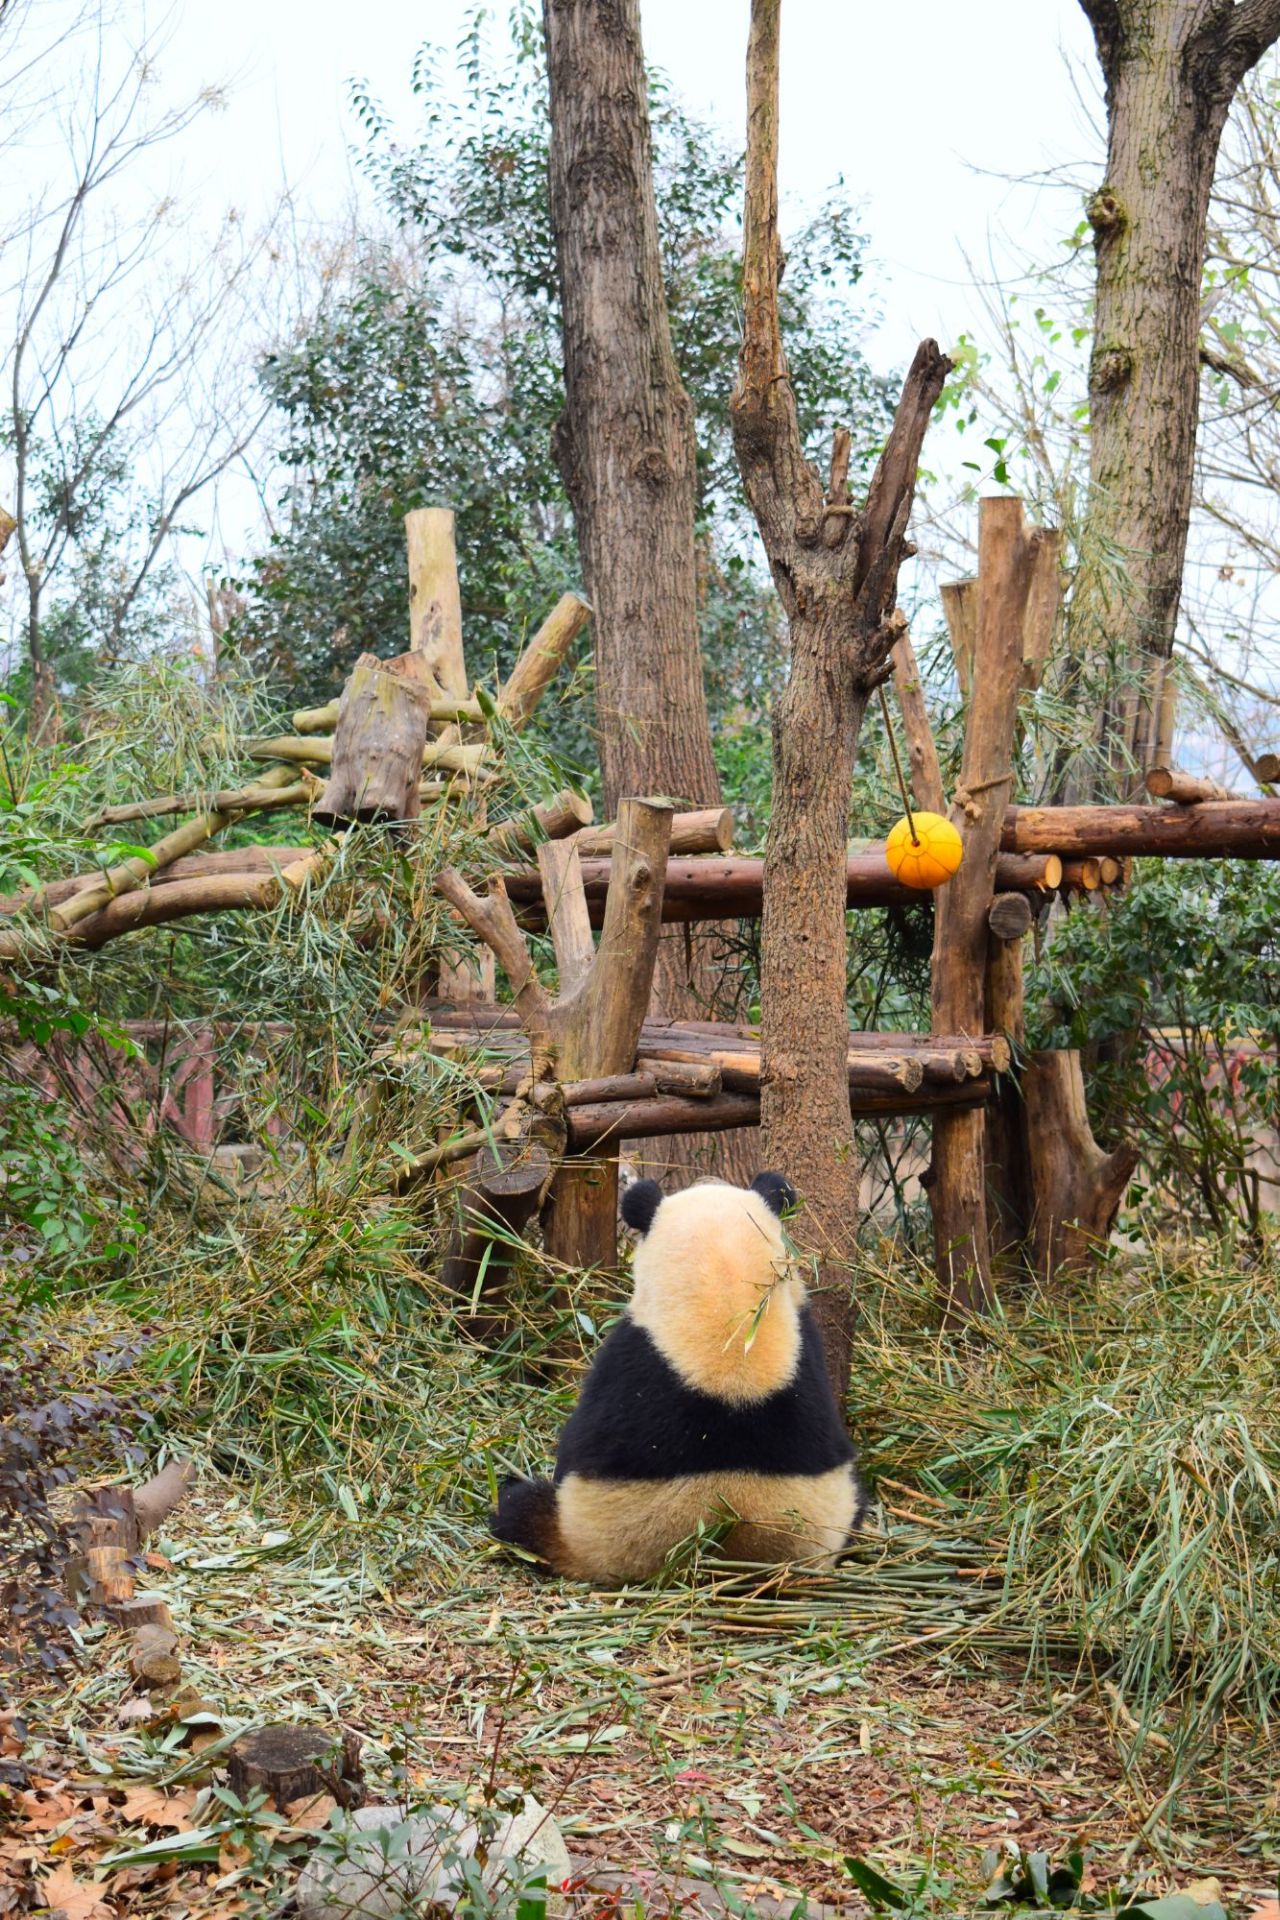 熊猫繁衍基地  ⛰【景点攻略】四川省是国宝宝熊猫繁衍基地，唯一一个“好吃懒做”的小动物被人们捧在手心